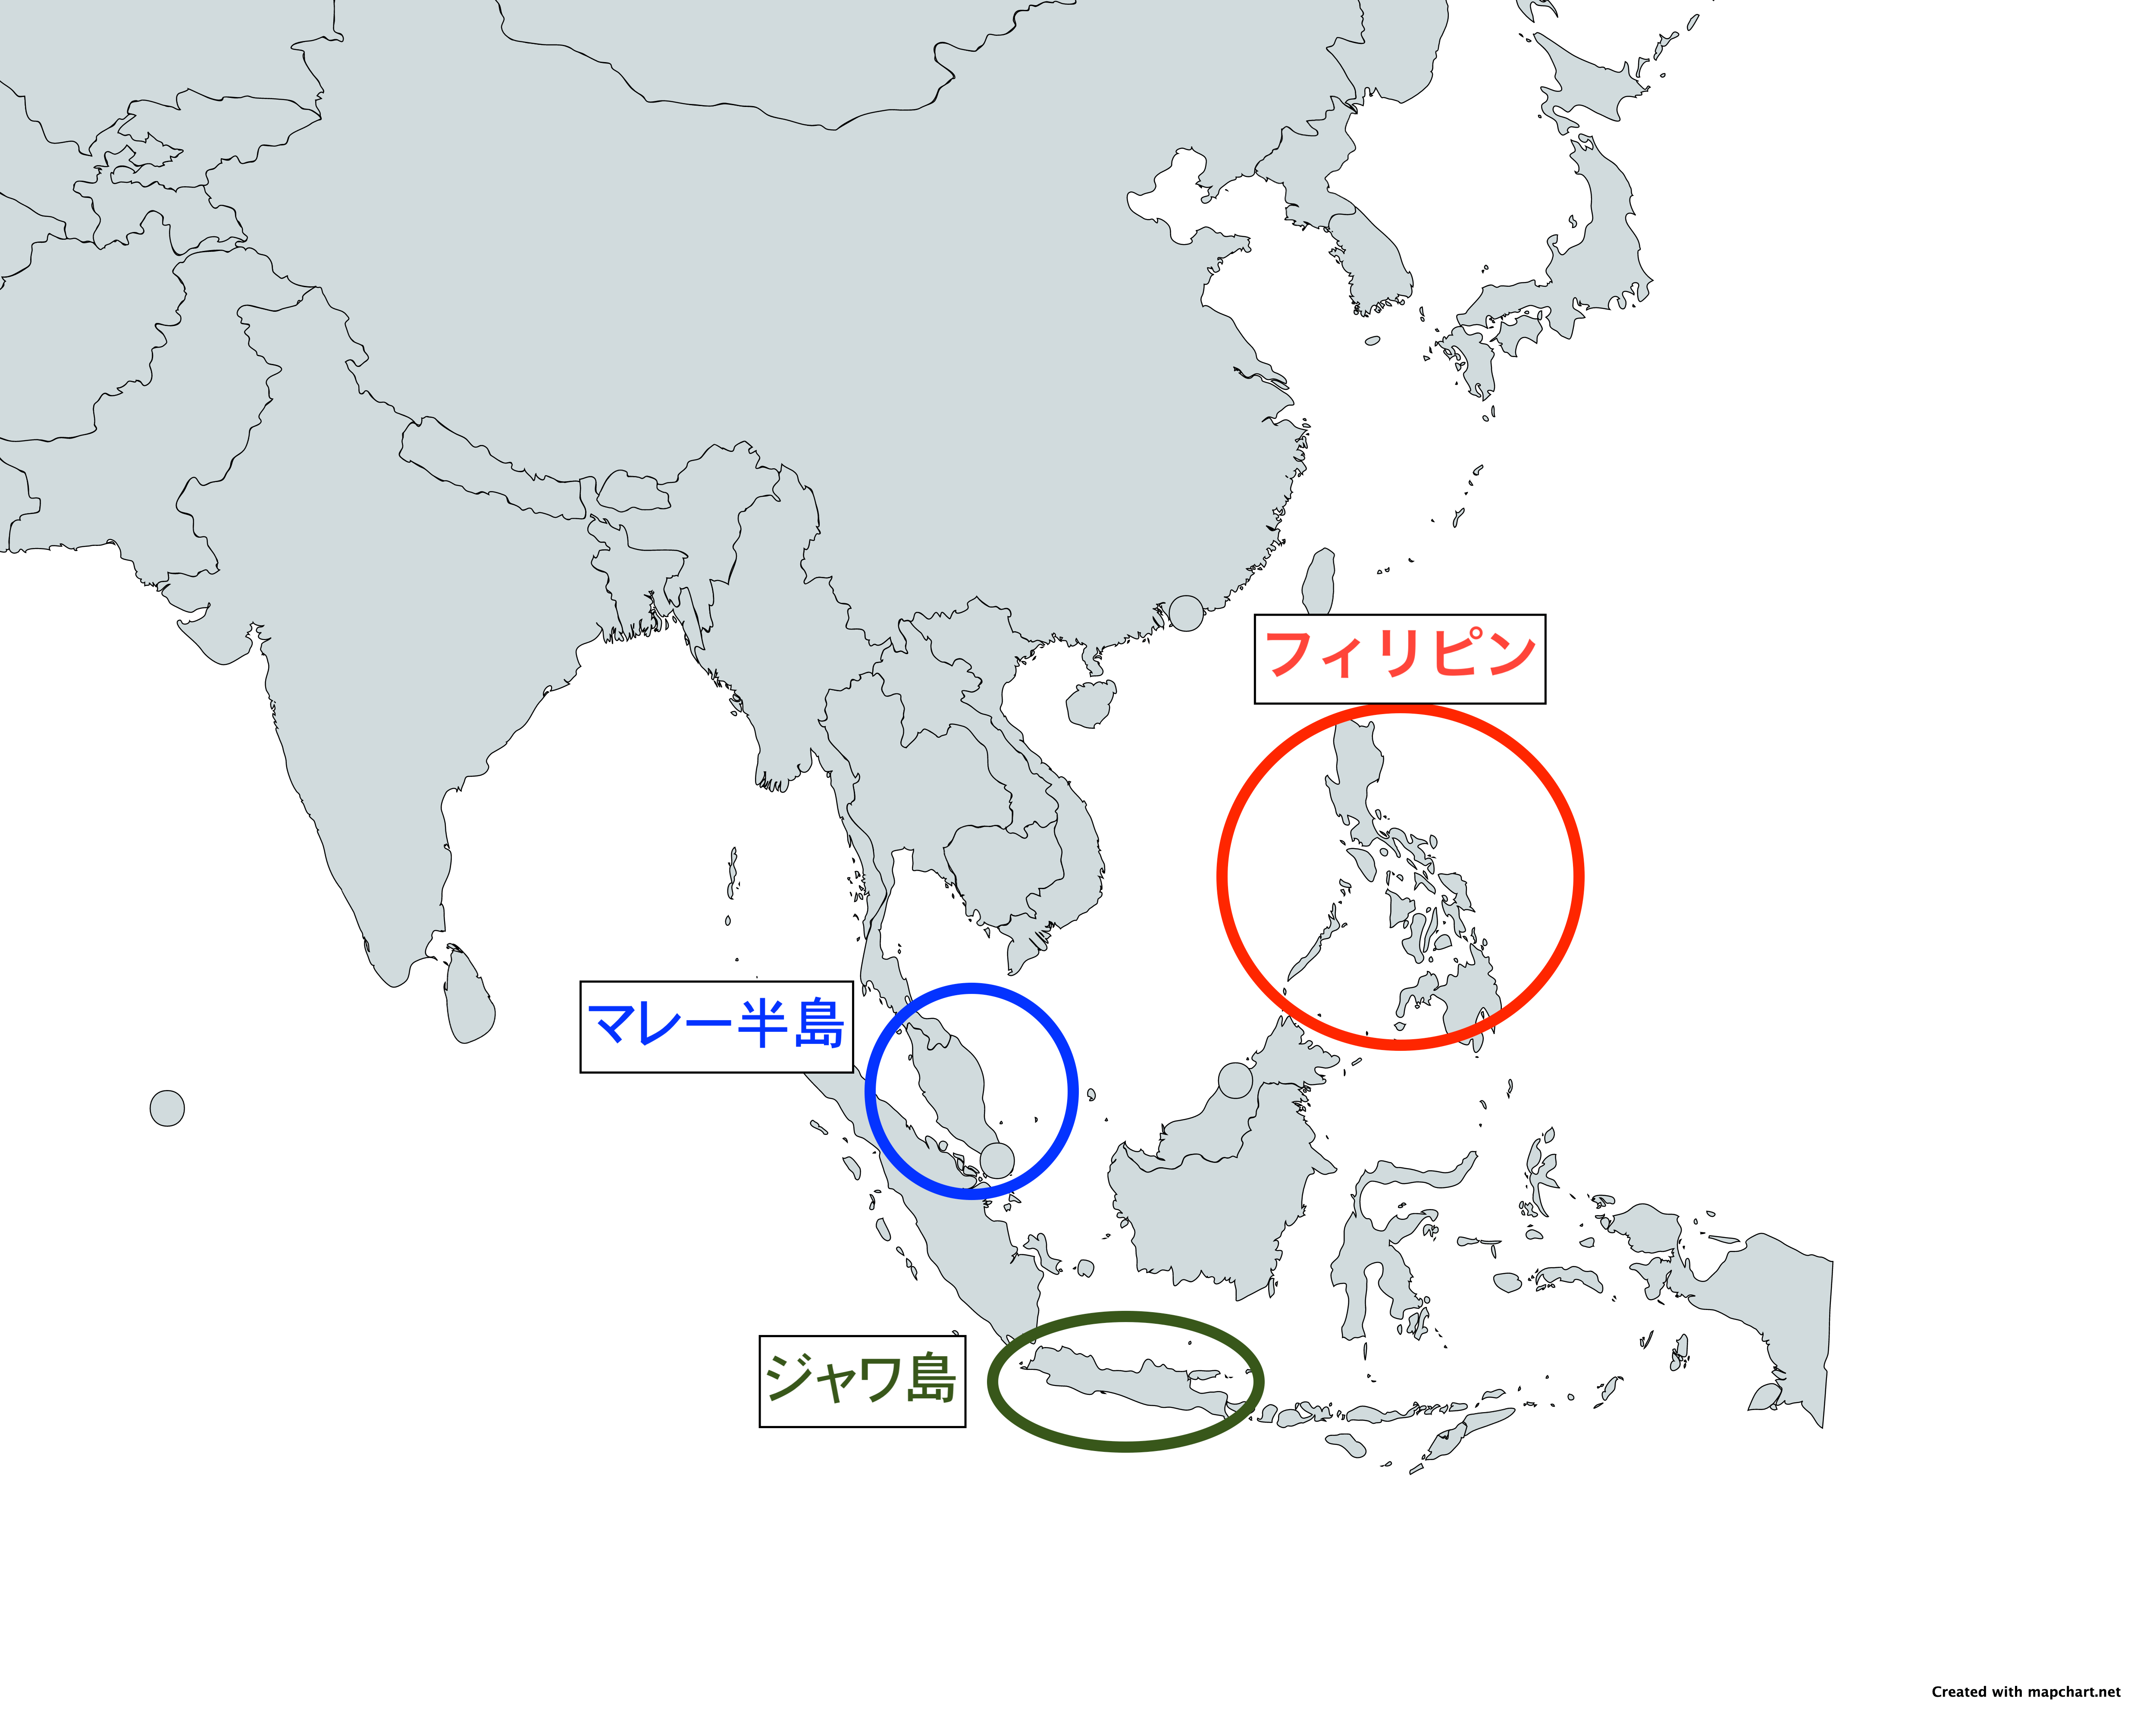 南方作戦のターゲットであるマレー半島・フィリピン・ジャワ島